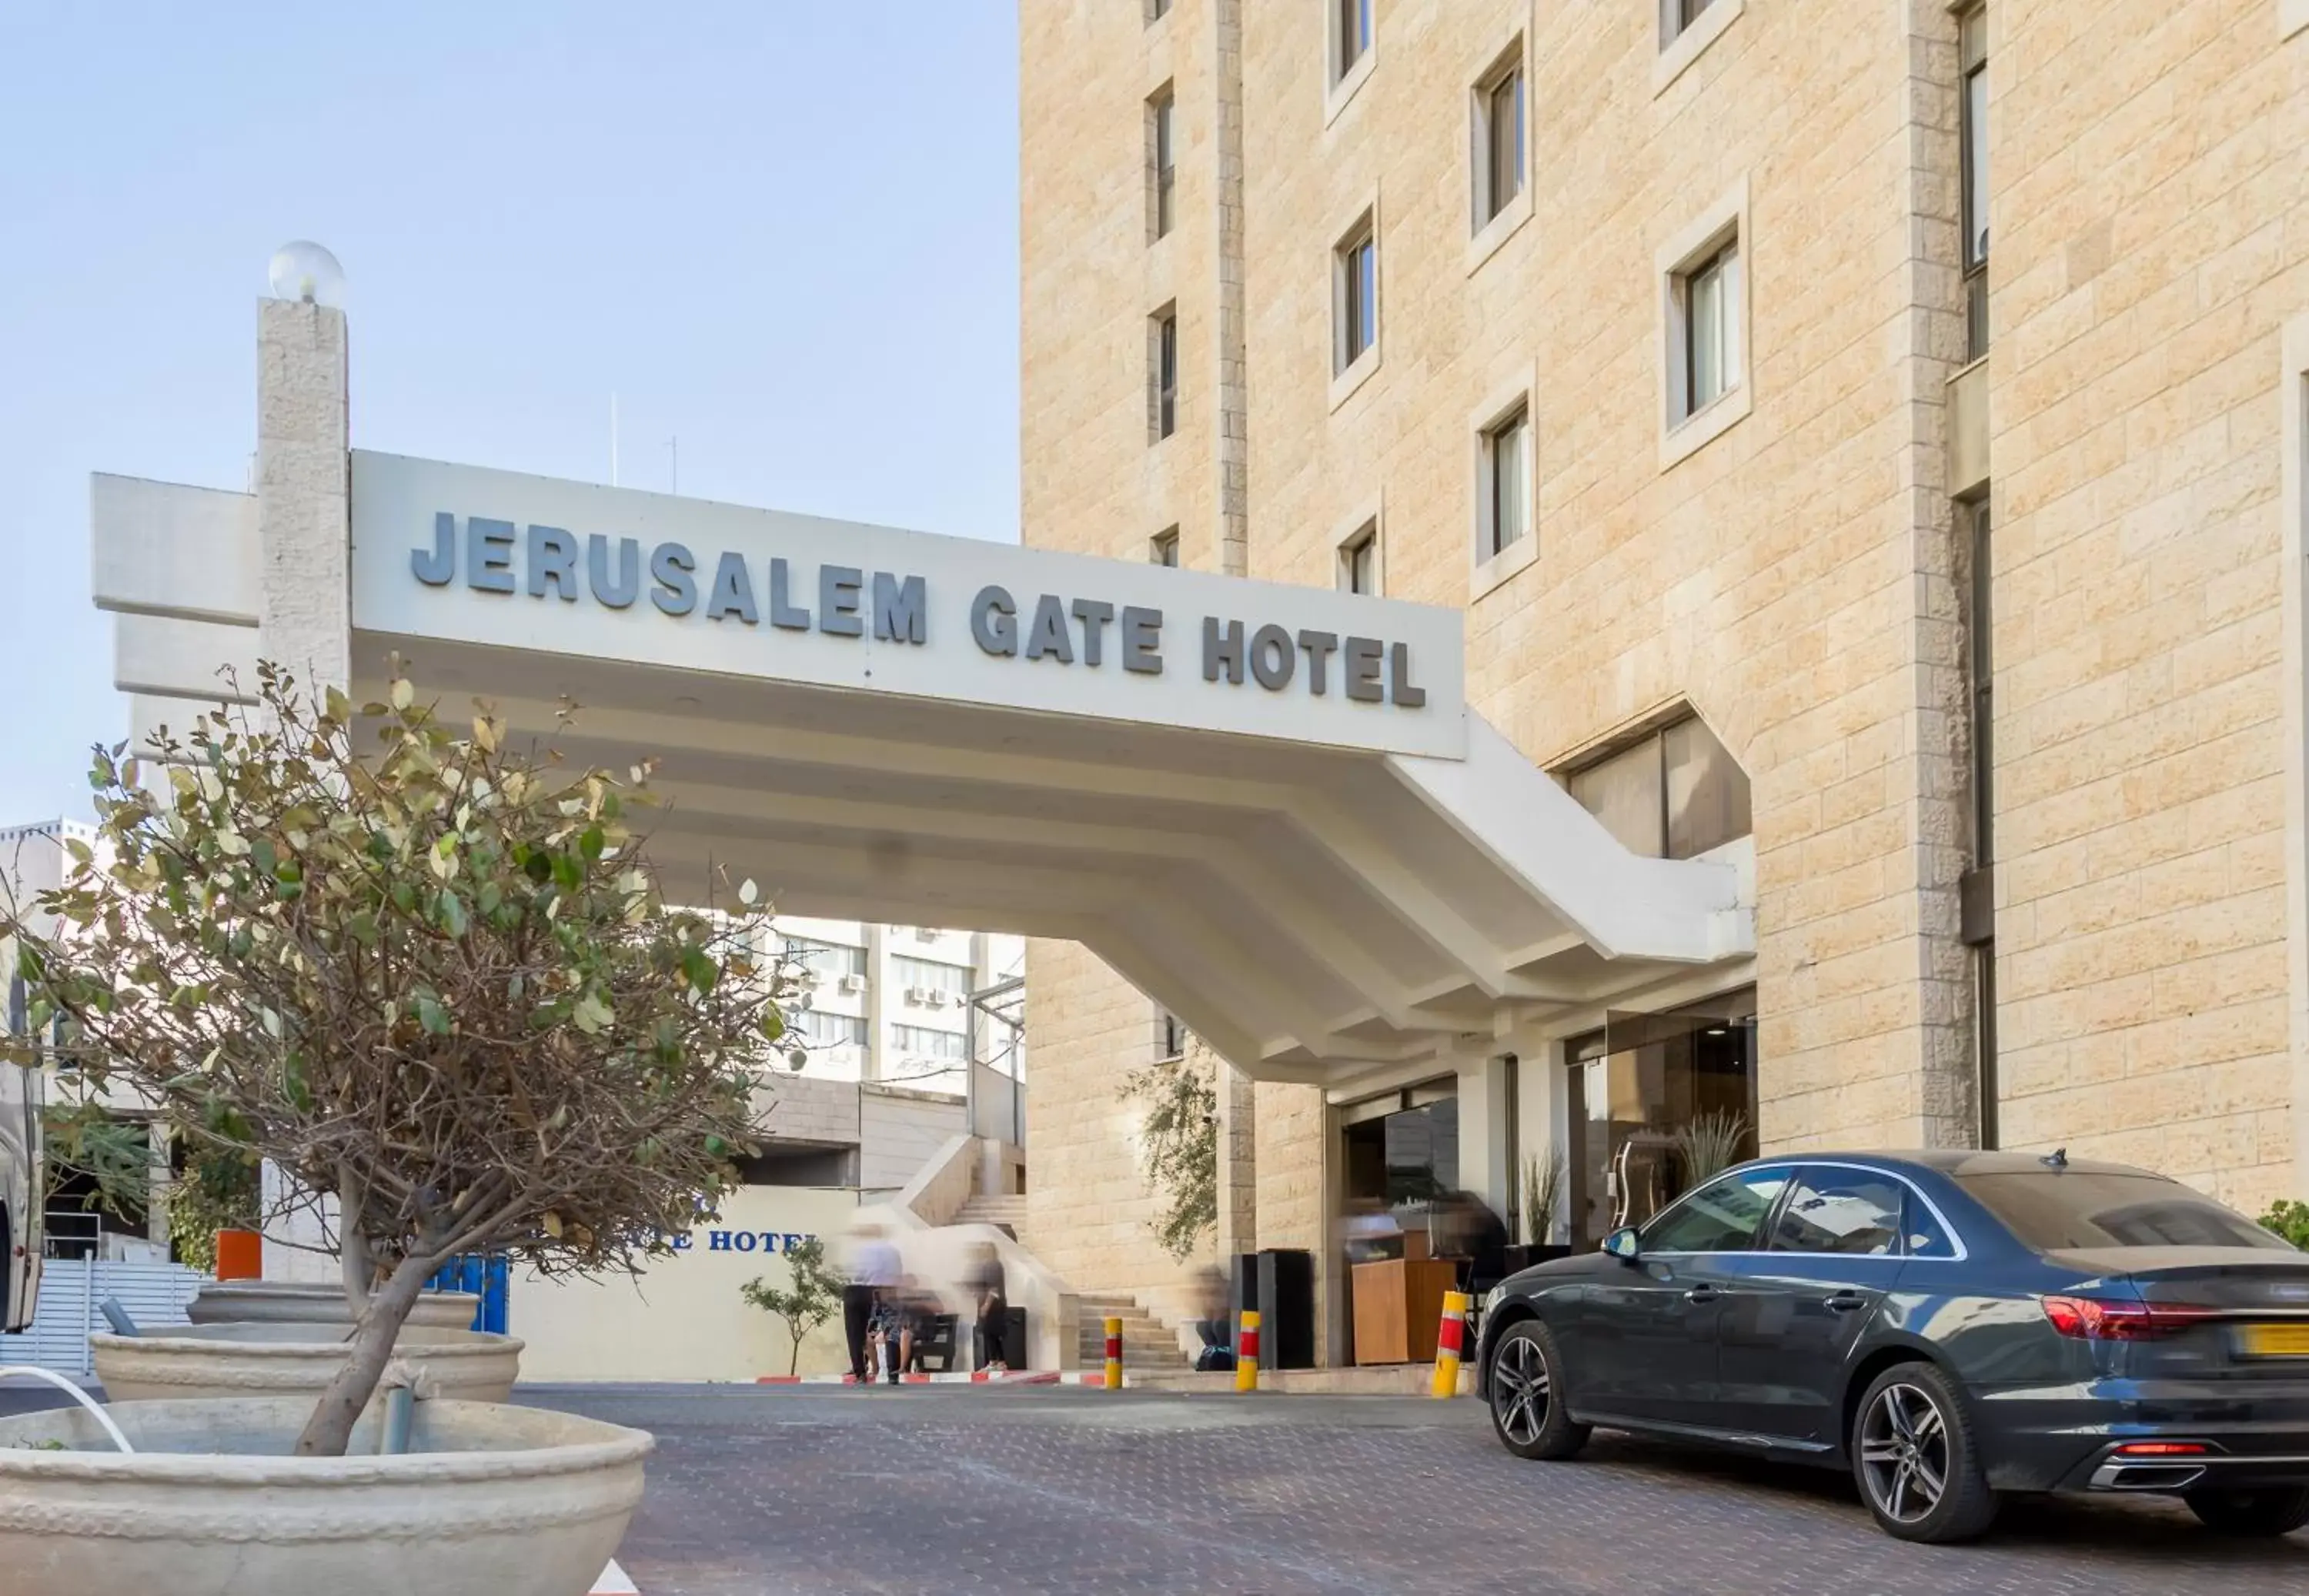 Facade/entrance, Property Building in Jerusalem Gate Hotel